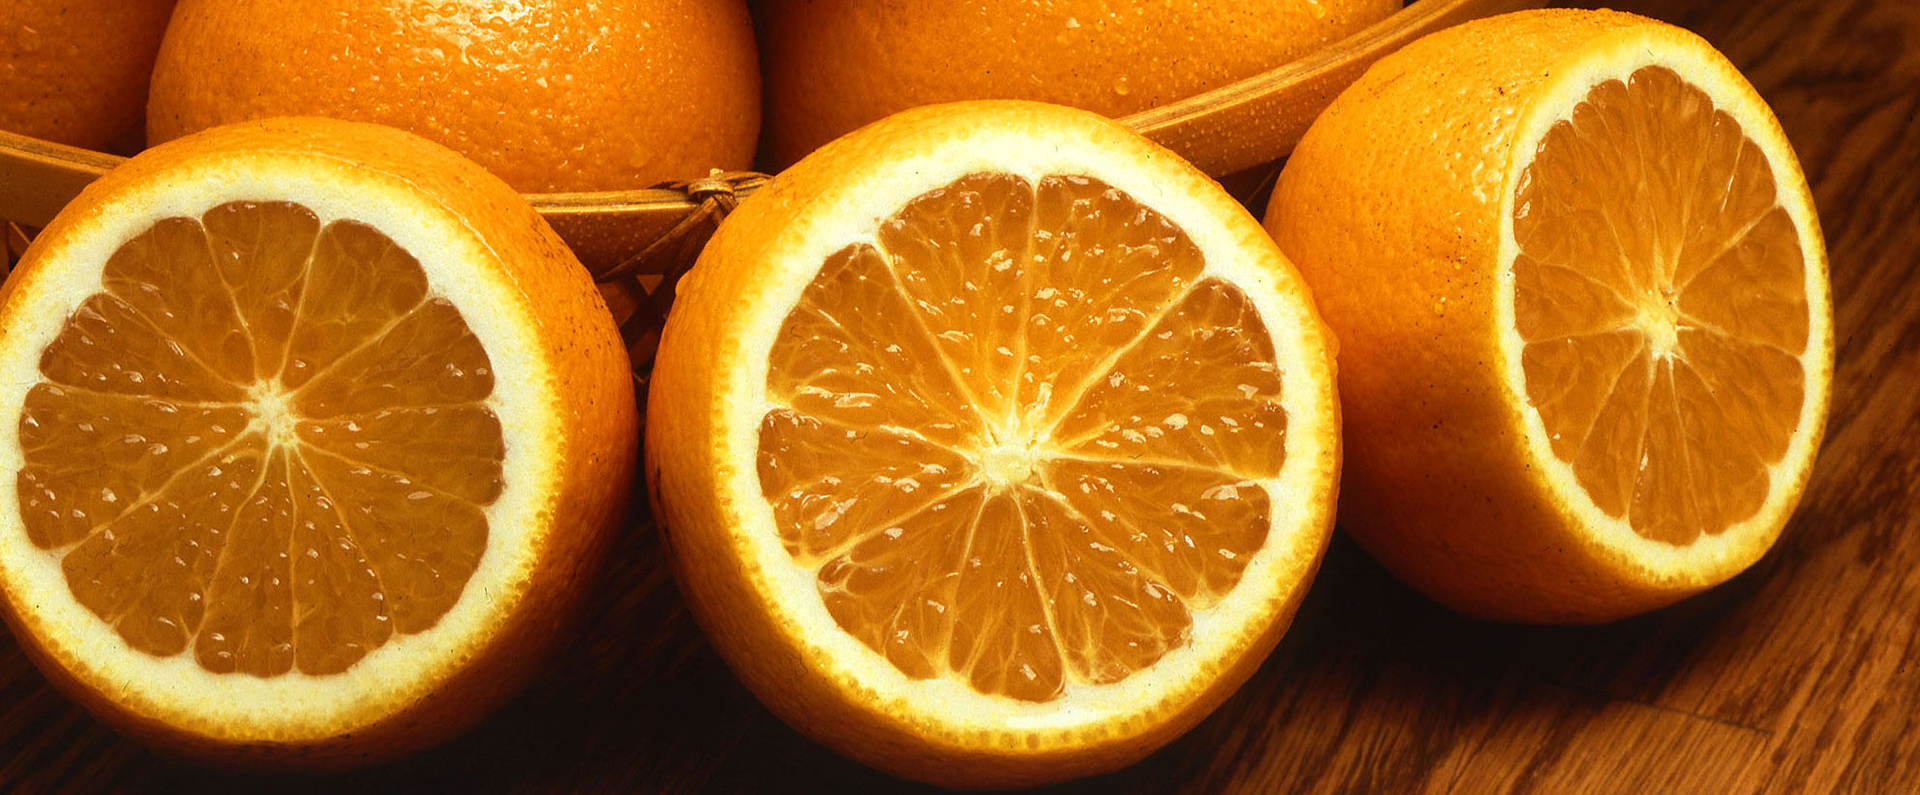 Fresh navel oranges sliced open